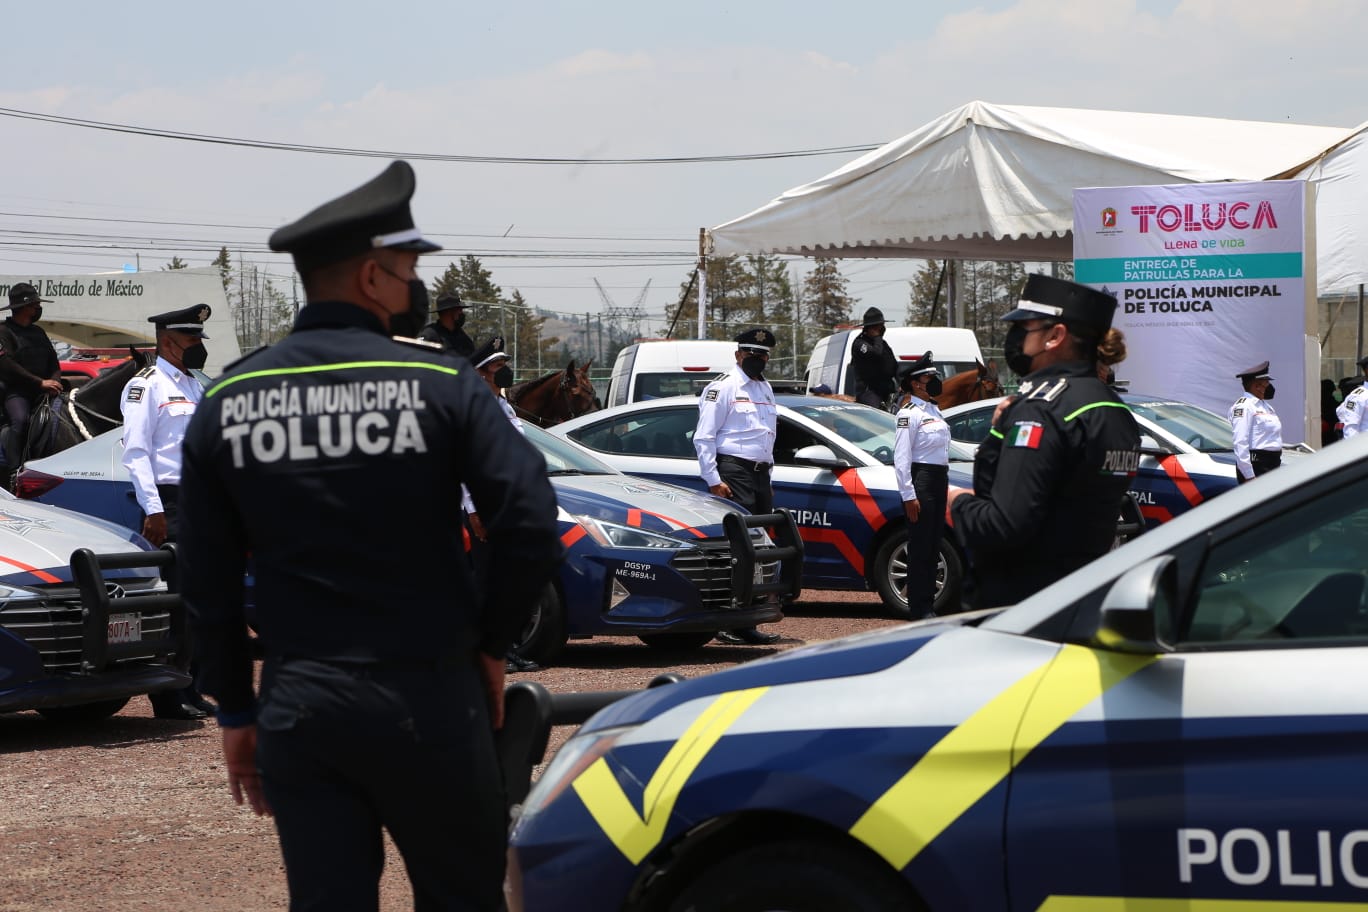 Pagará Toluca 13 millones mensuales por patrullas, y continúa endeudado